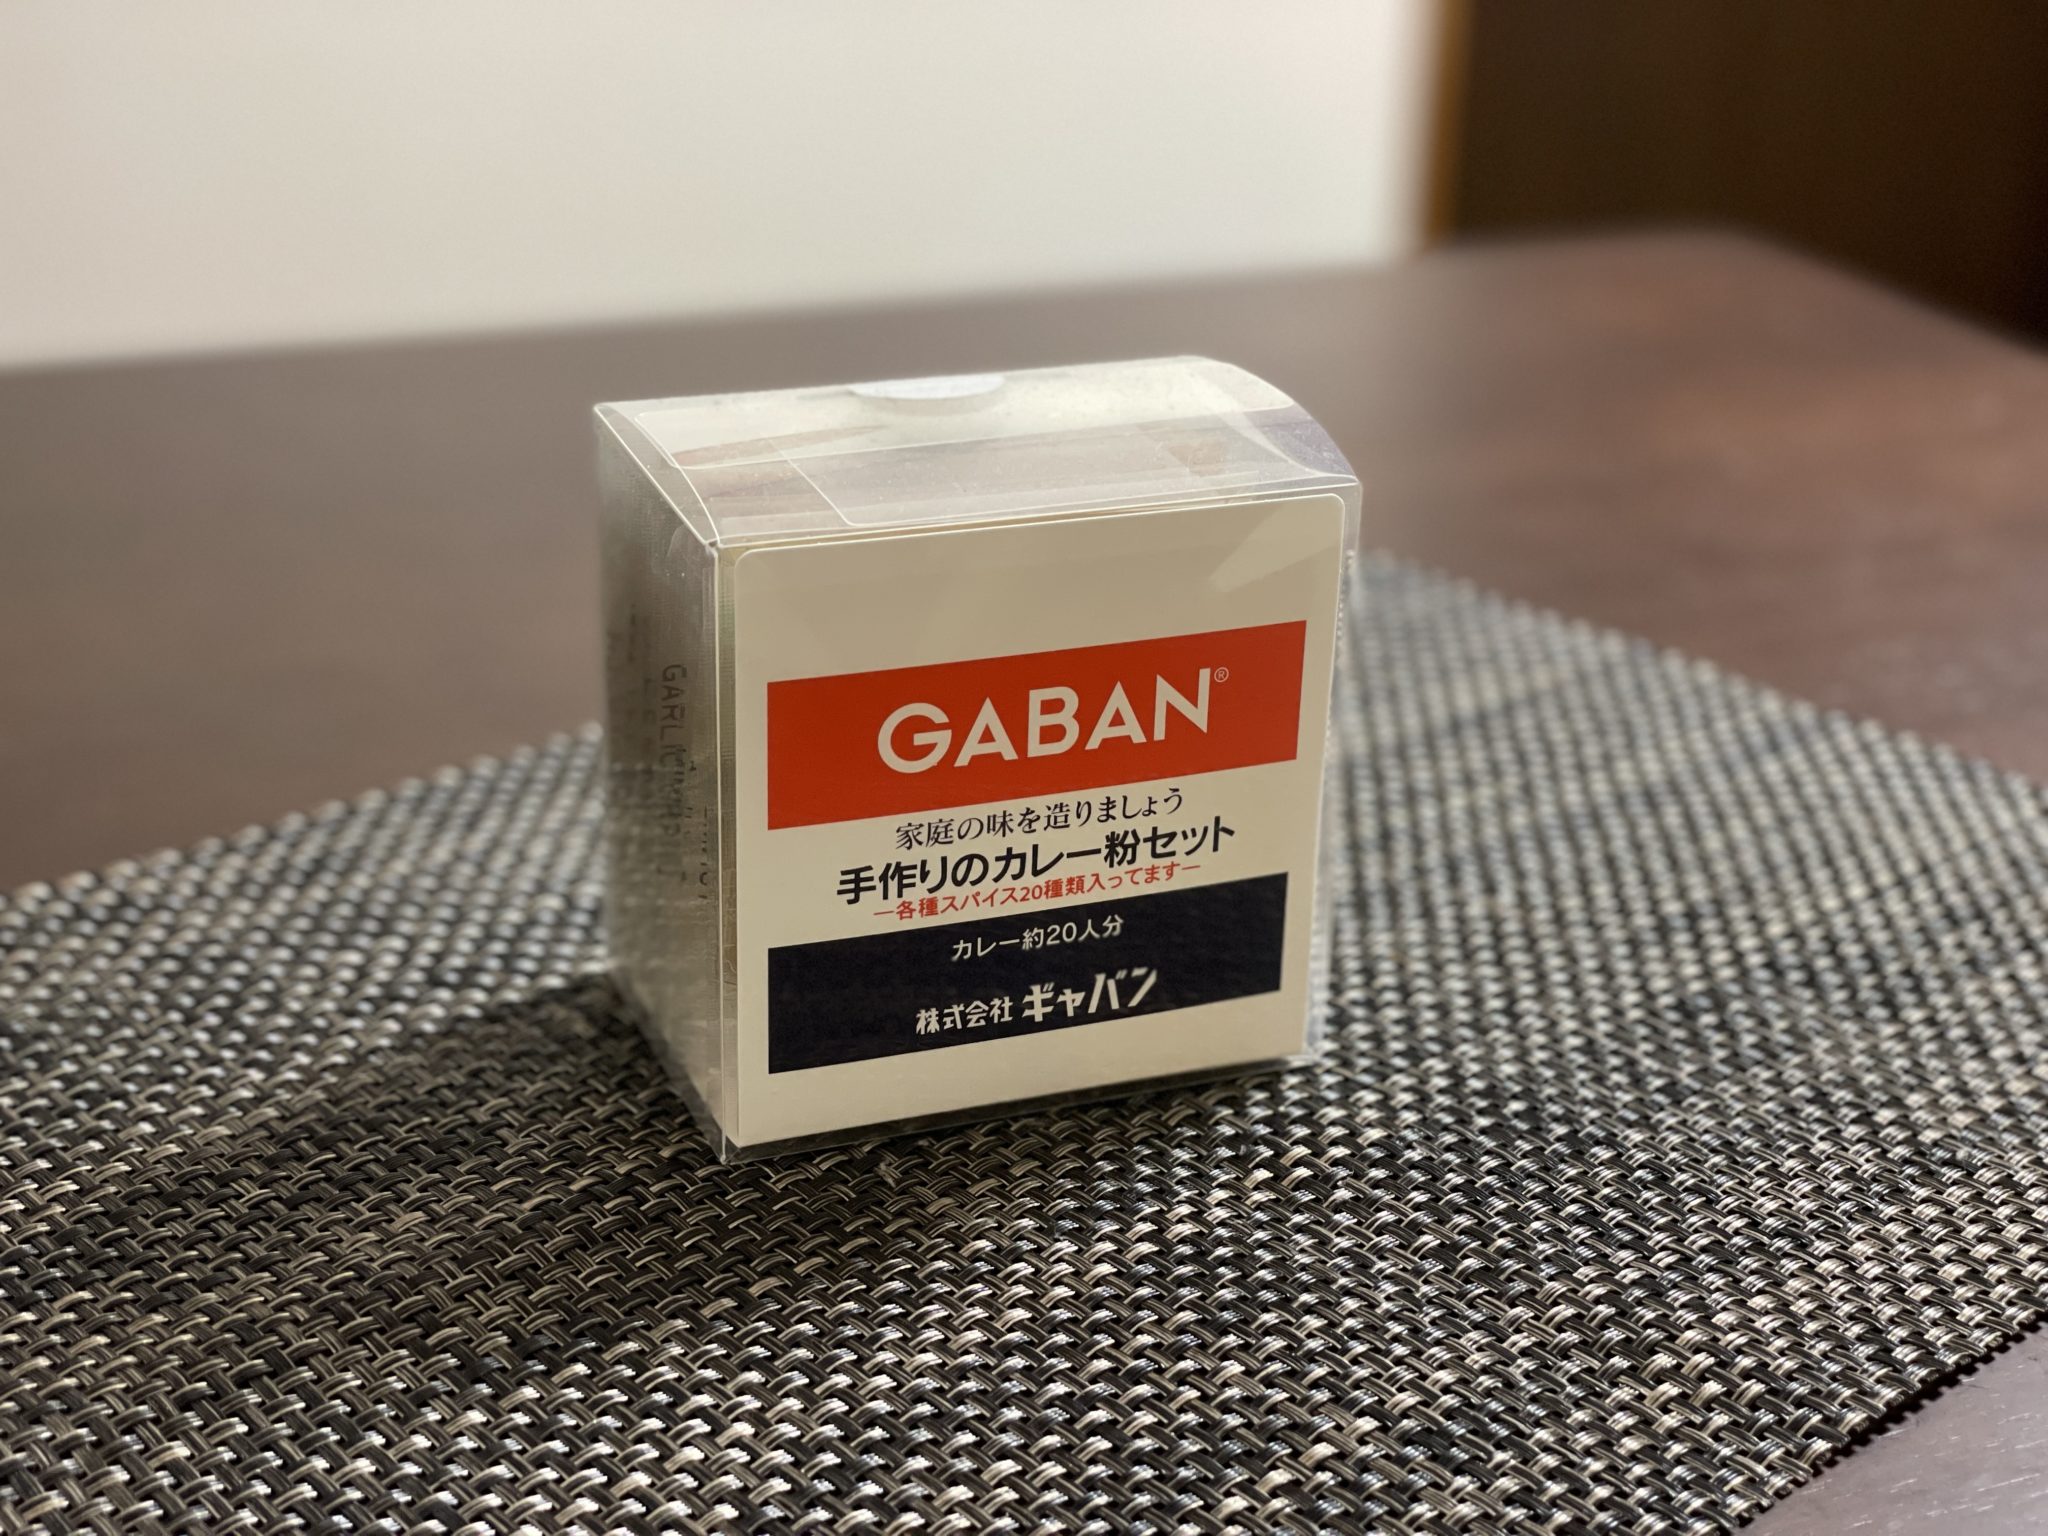 GABAN 手作りのカレー粉セット』なら料理初心者でも簡単に美味しいスパイスカレーを作れる | 福岡おいしい生活